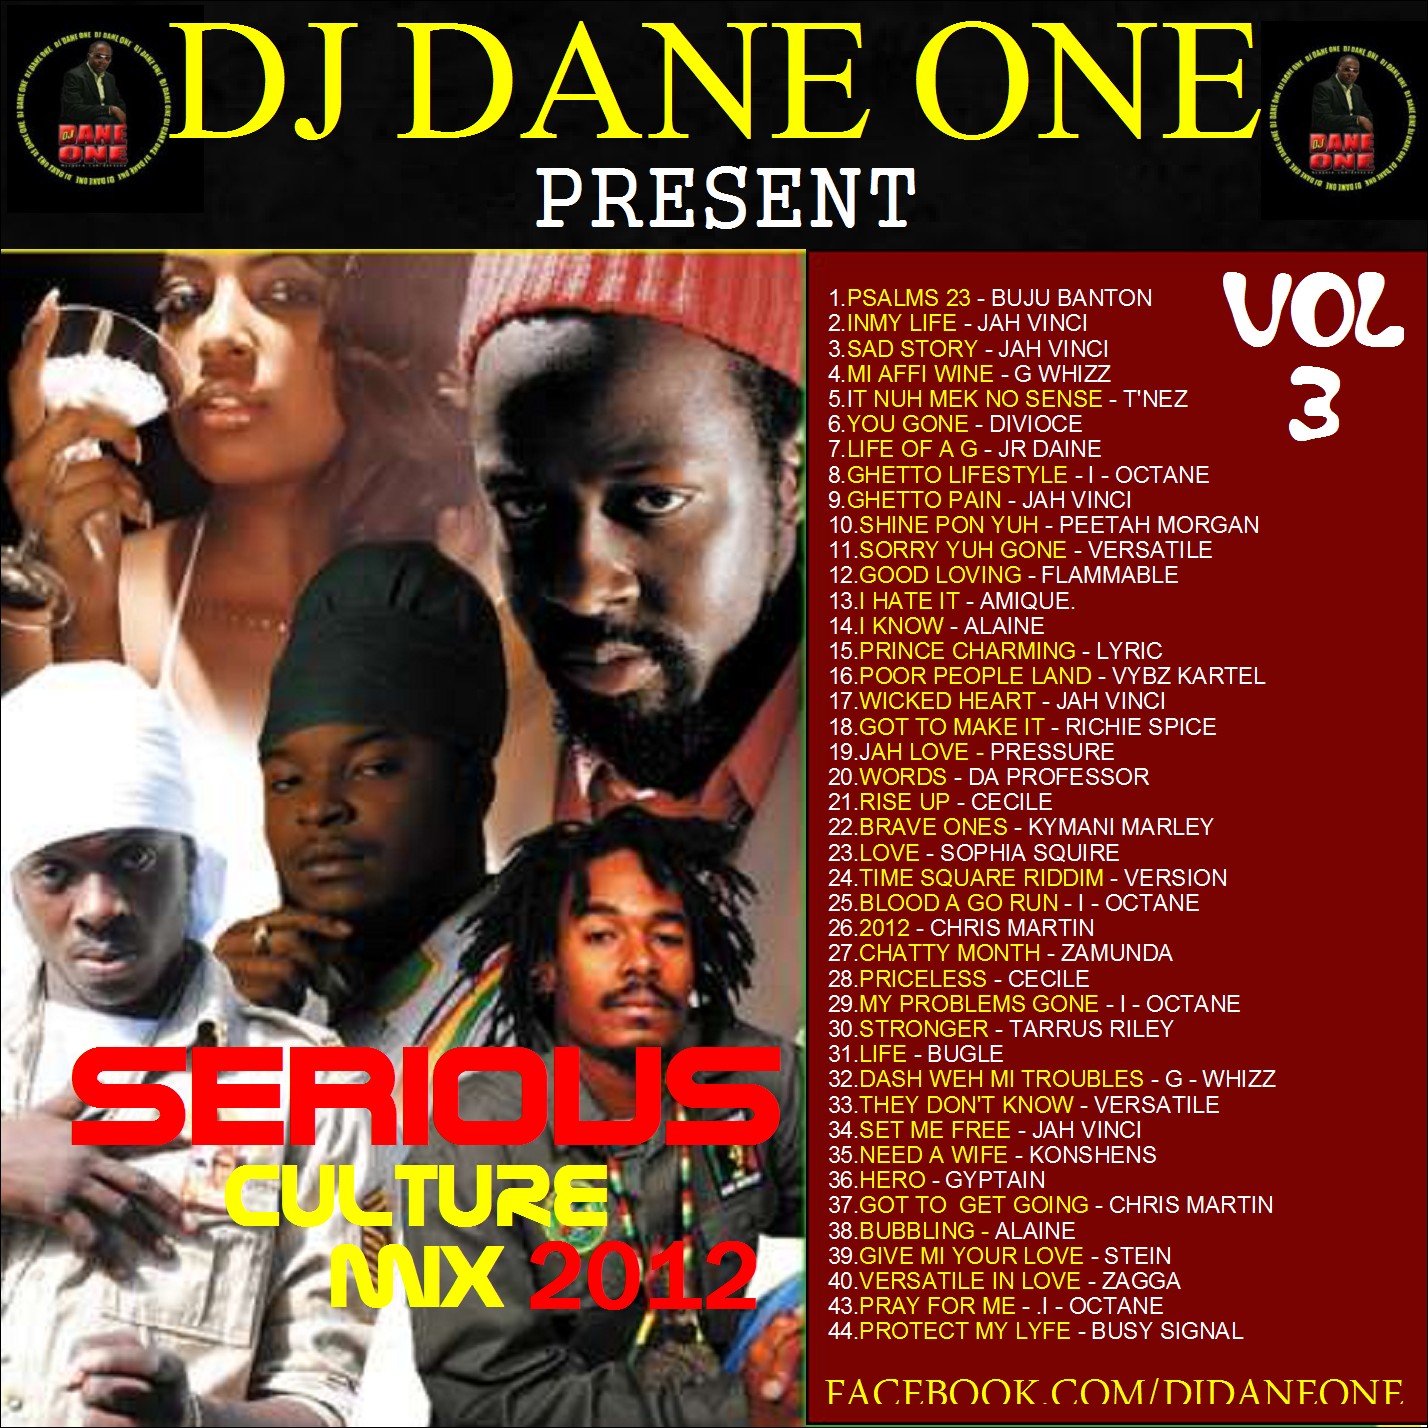 Dancehall Hiphop Mixtapes New Vision Sound Dj Dane One Presents Serious Culture Mix Vol 3 2012